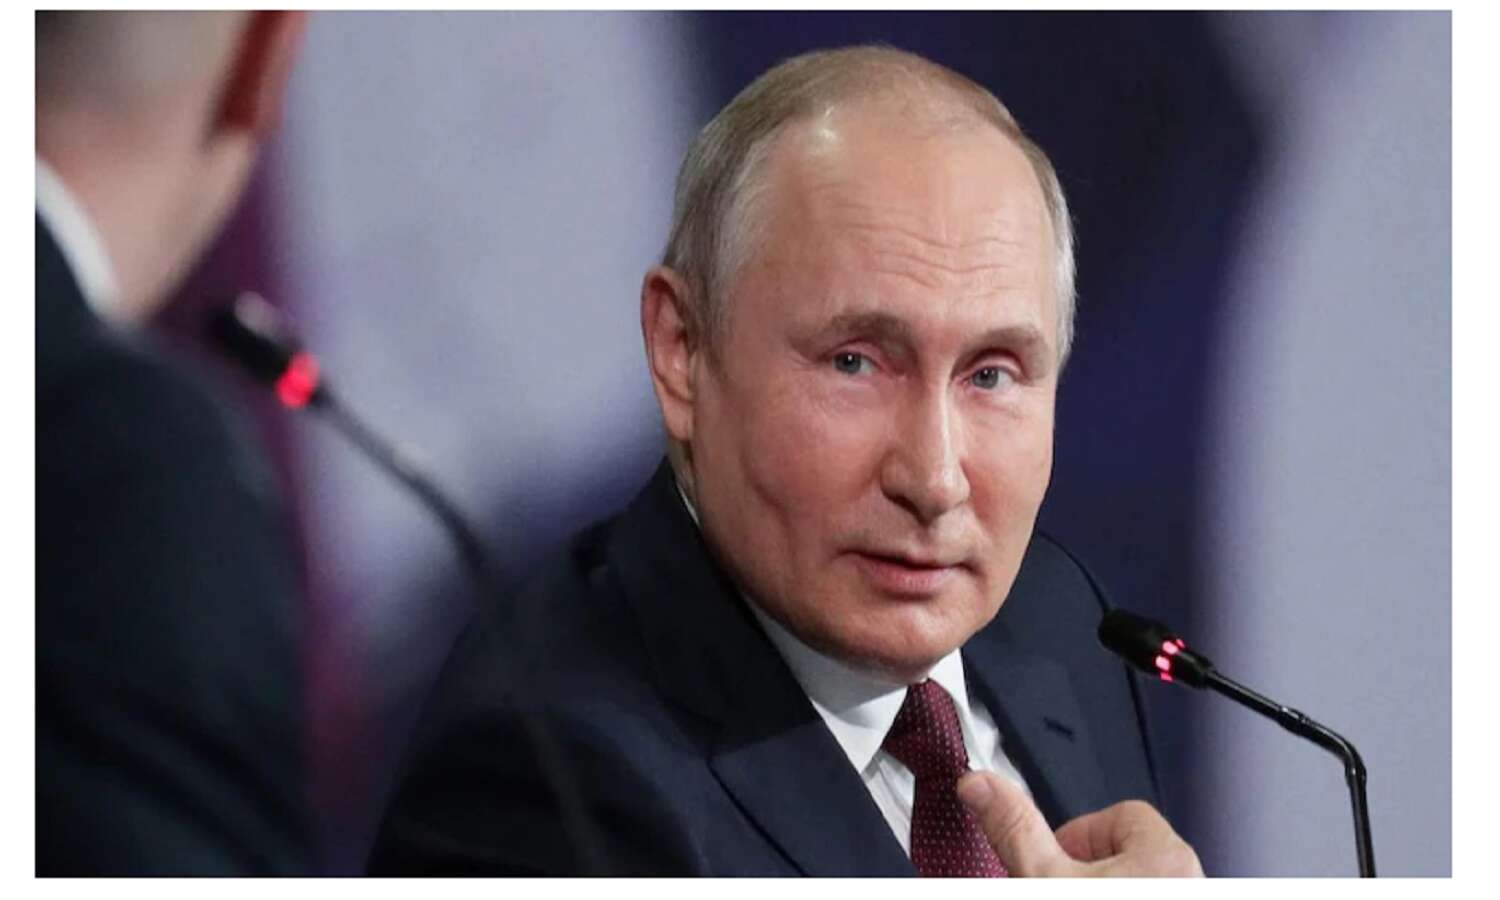 Ukraine-Russia Crisis : रूसी राष्ट्रपति पुतिन ने यूक्रेन के खिलाफ जंग की घोषणा की, कई शहरों में बम धमाका, जो दखल देगा वो भुगतेगा परिणाम